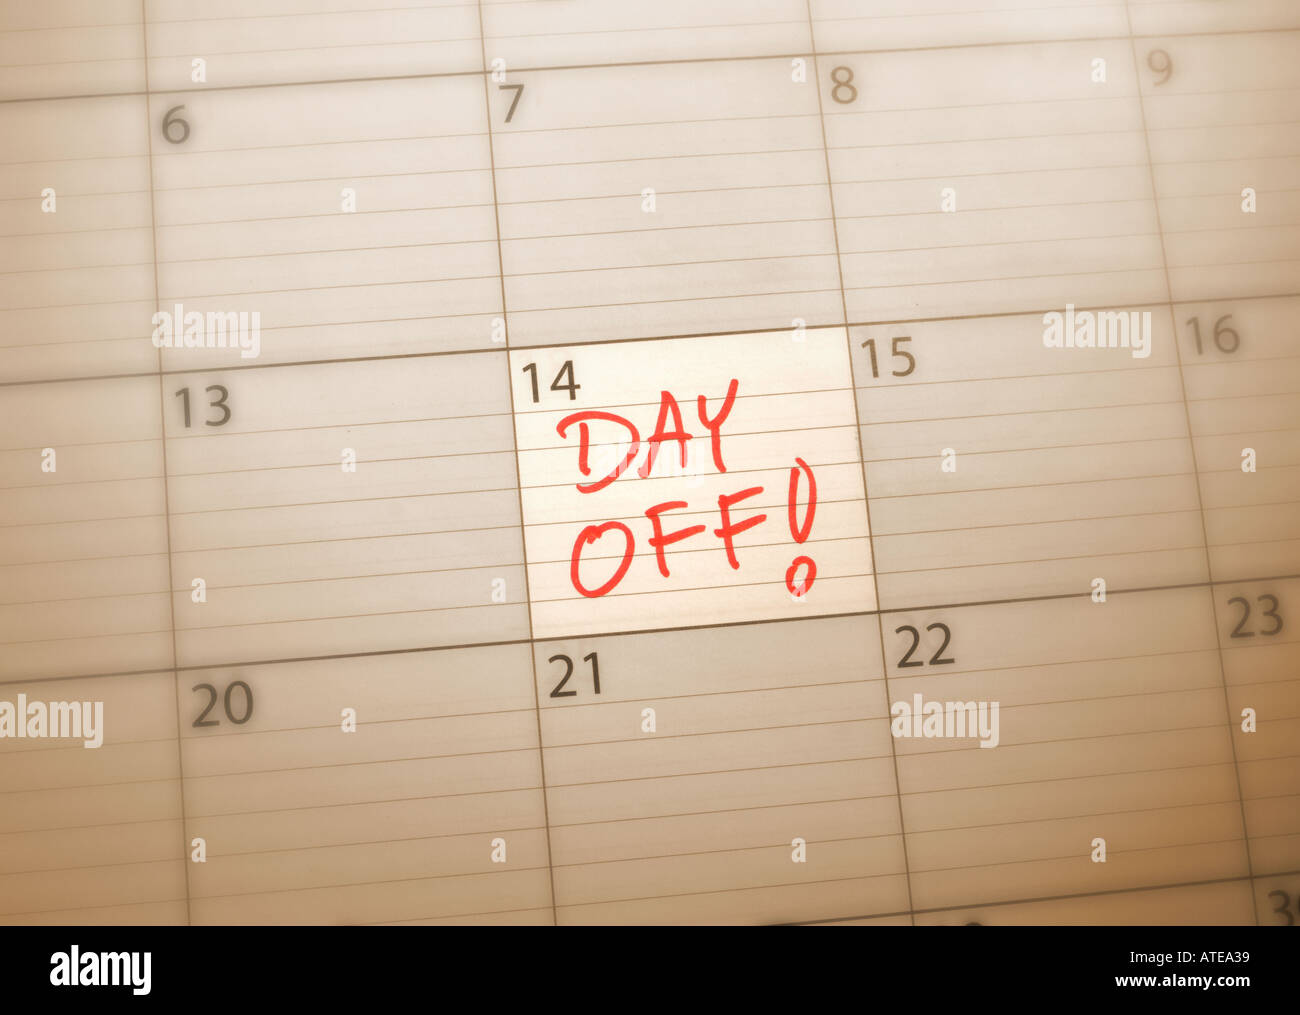 Calendario che mostra solo una giornata tra i molti altri giorni Foto Stock